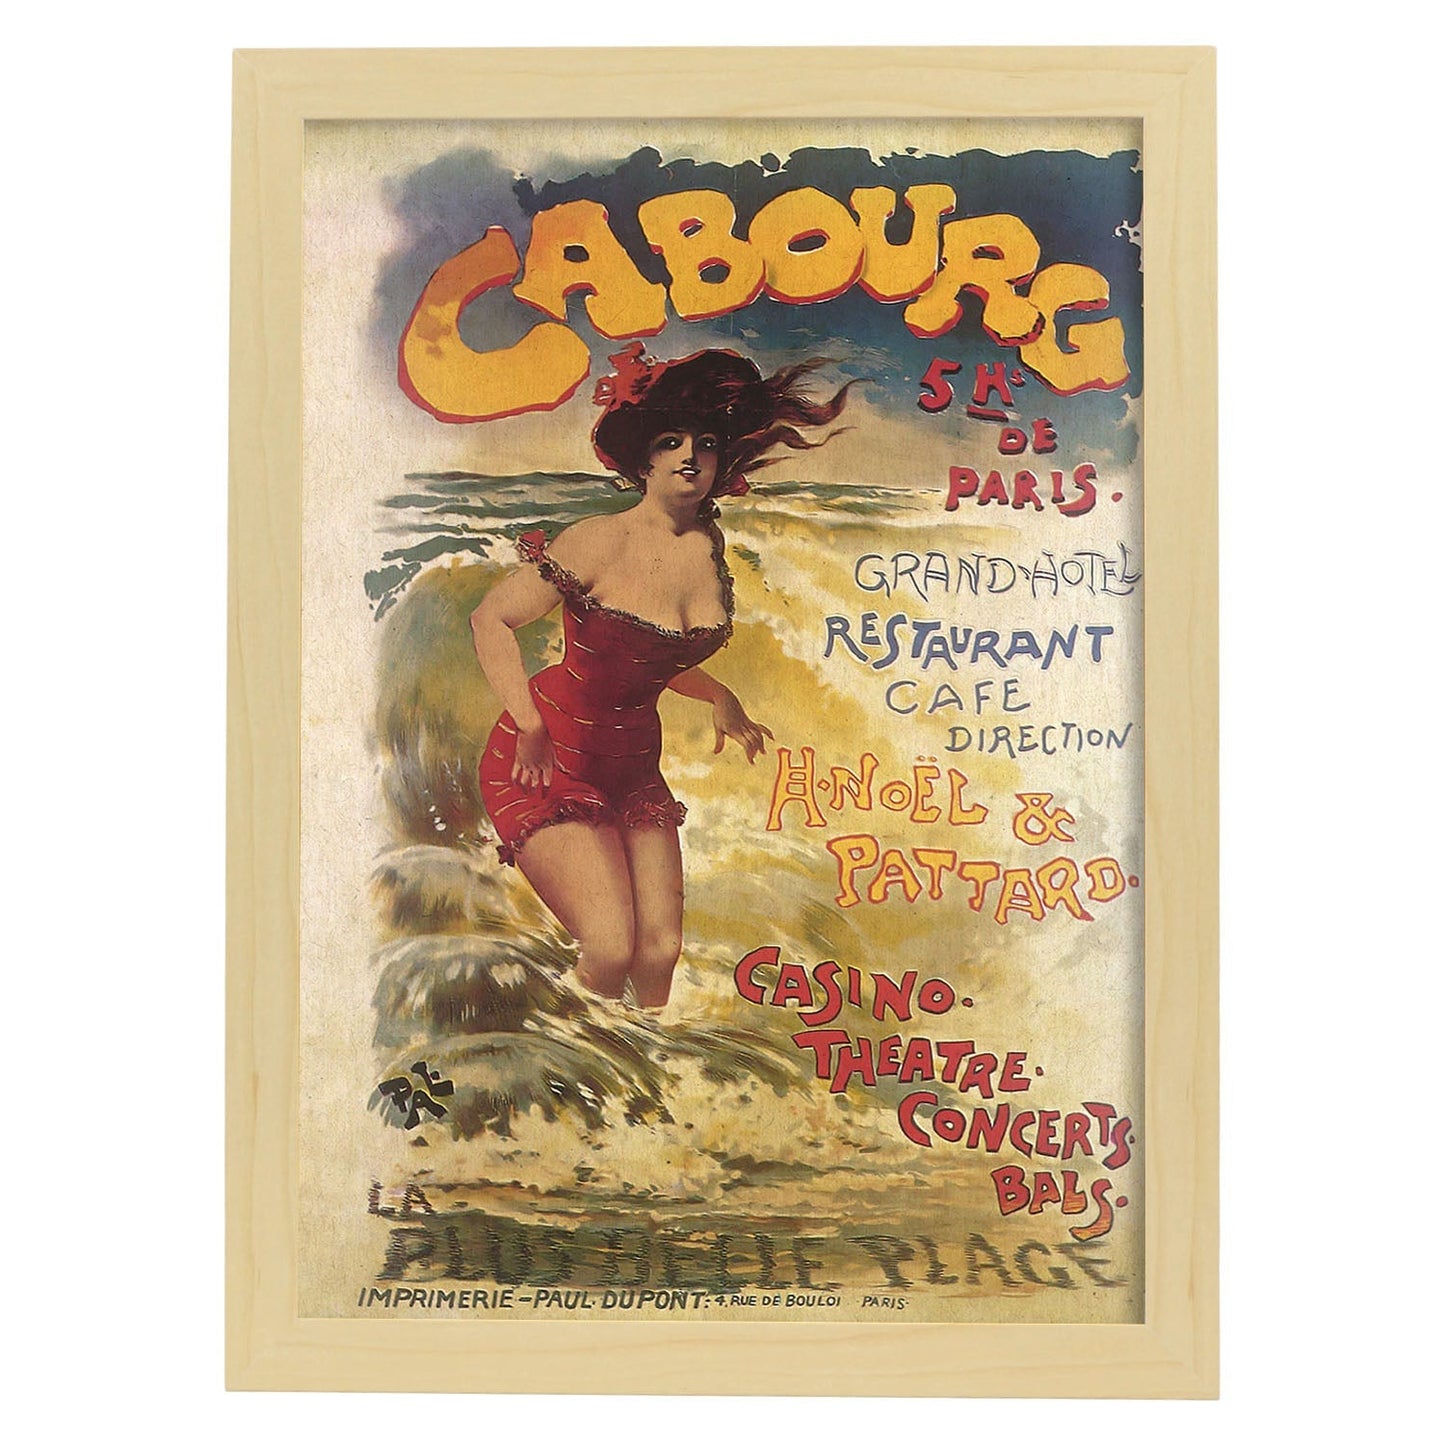 Poster vintage. Cartel vintage anuncio Casino Cabourg de Paris.-Artwork-Nacnic-A3-Marco Madera clara-Nacnic Estudio SL